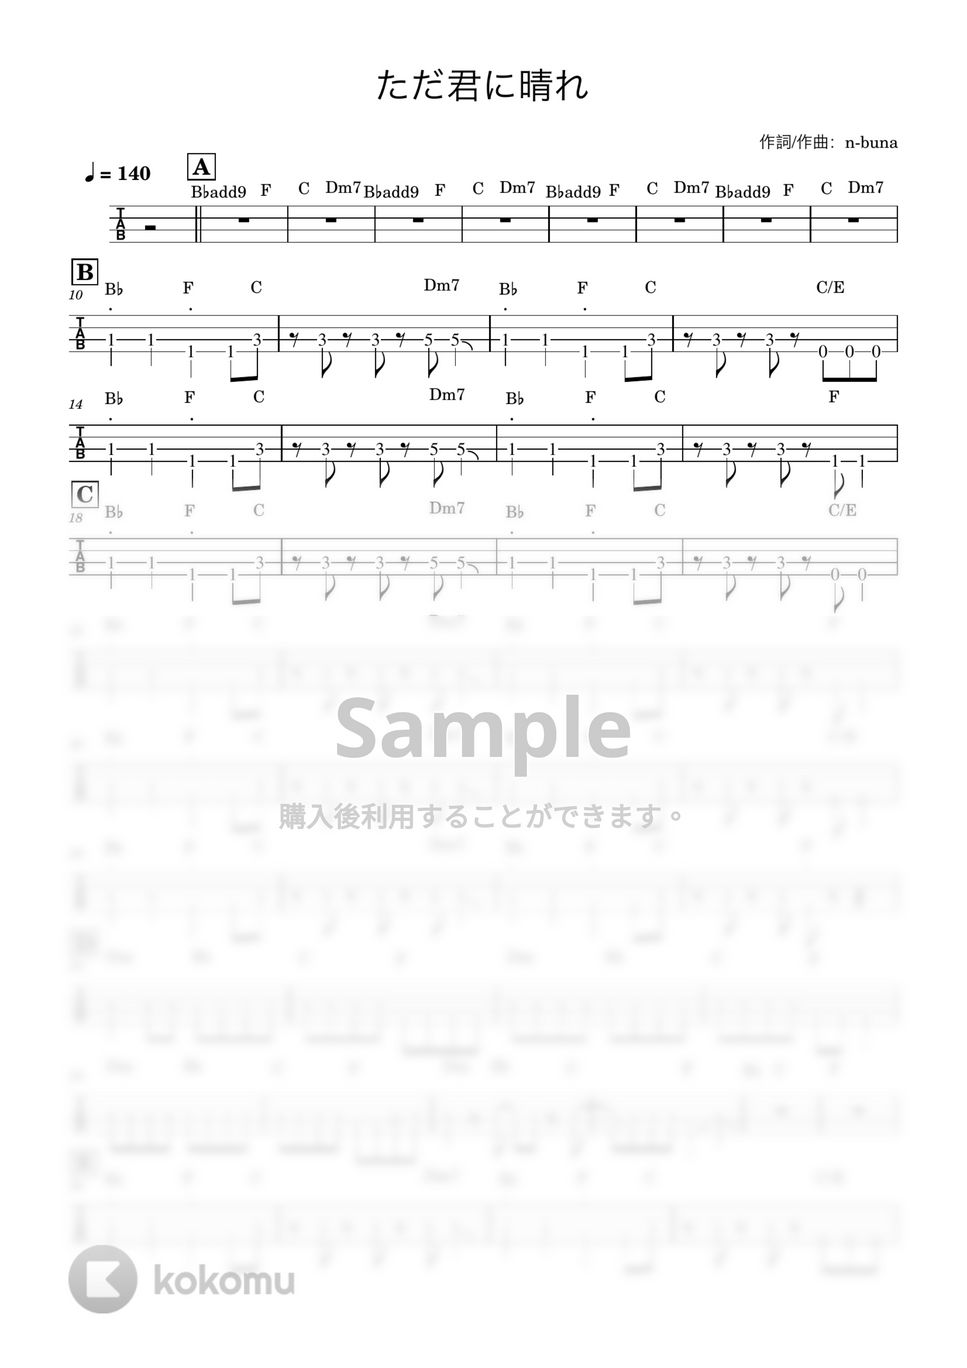 ヨルシカ - ただ君に晴れ (ベースTAB譜) by ベースライン研究所タペ